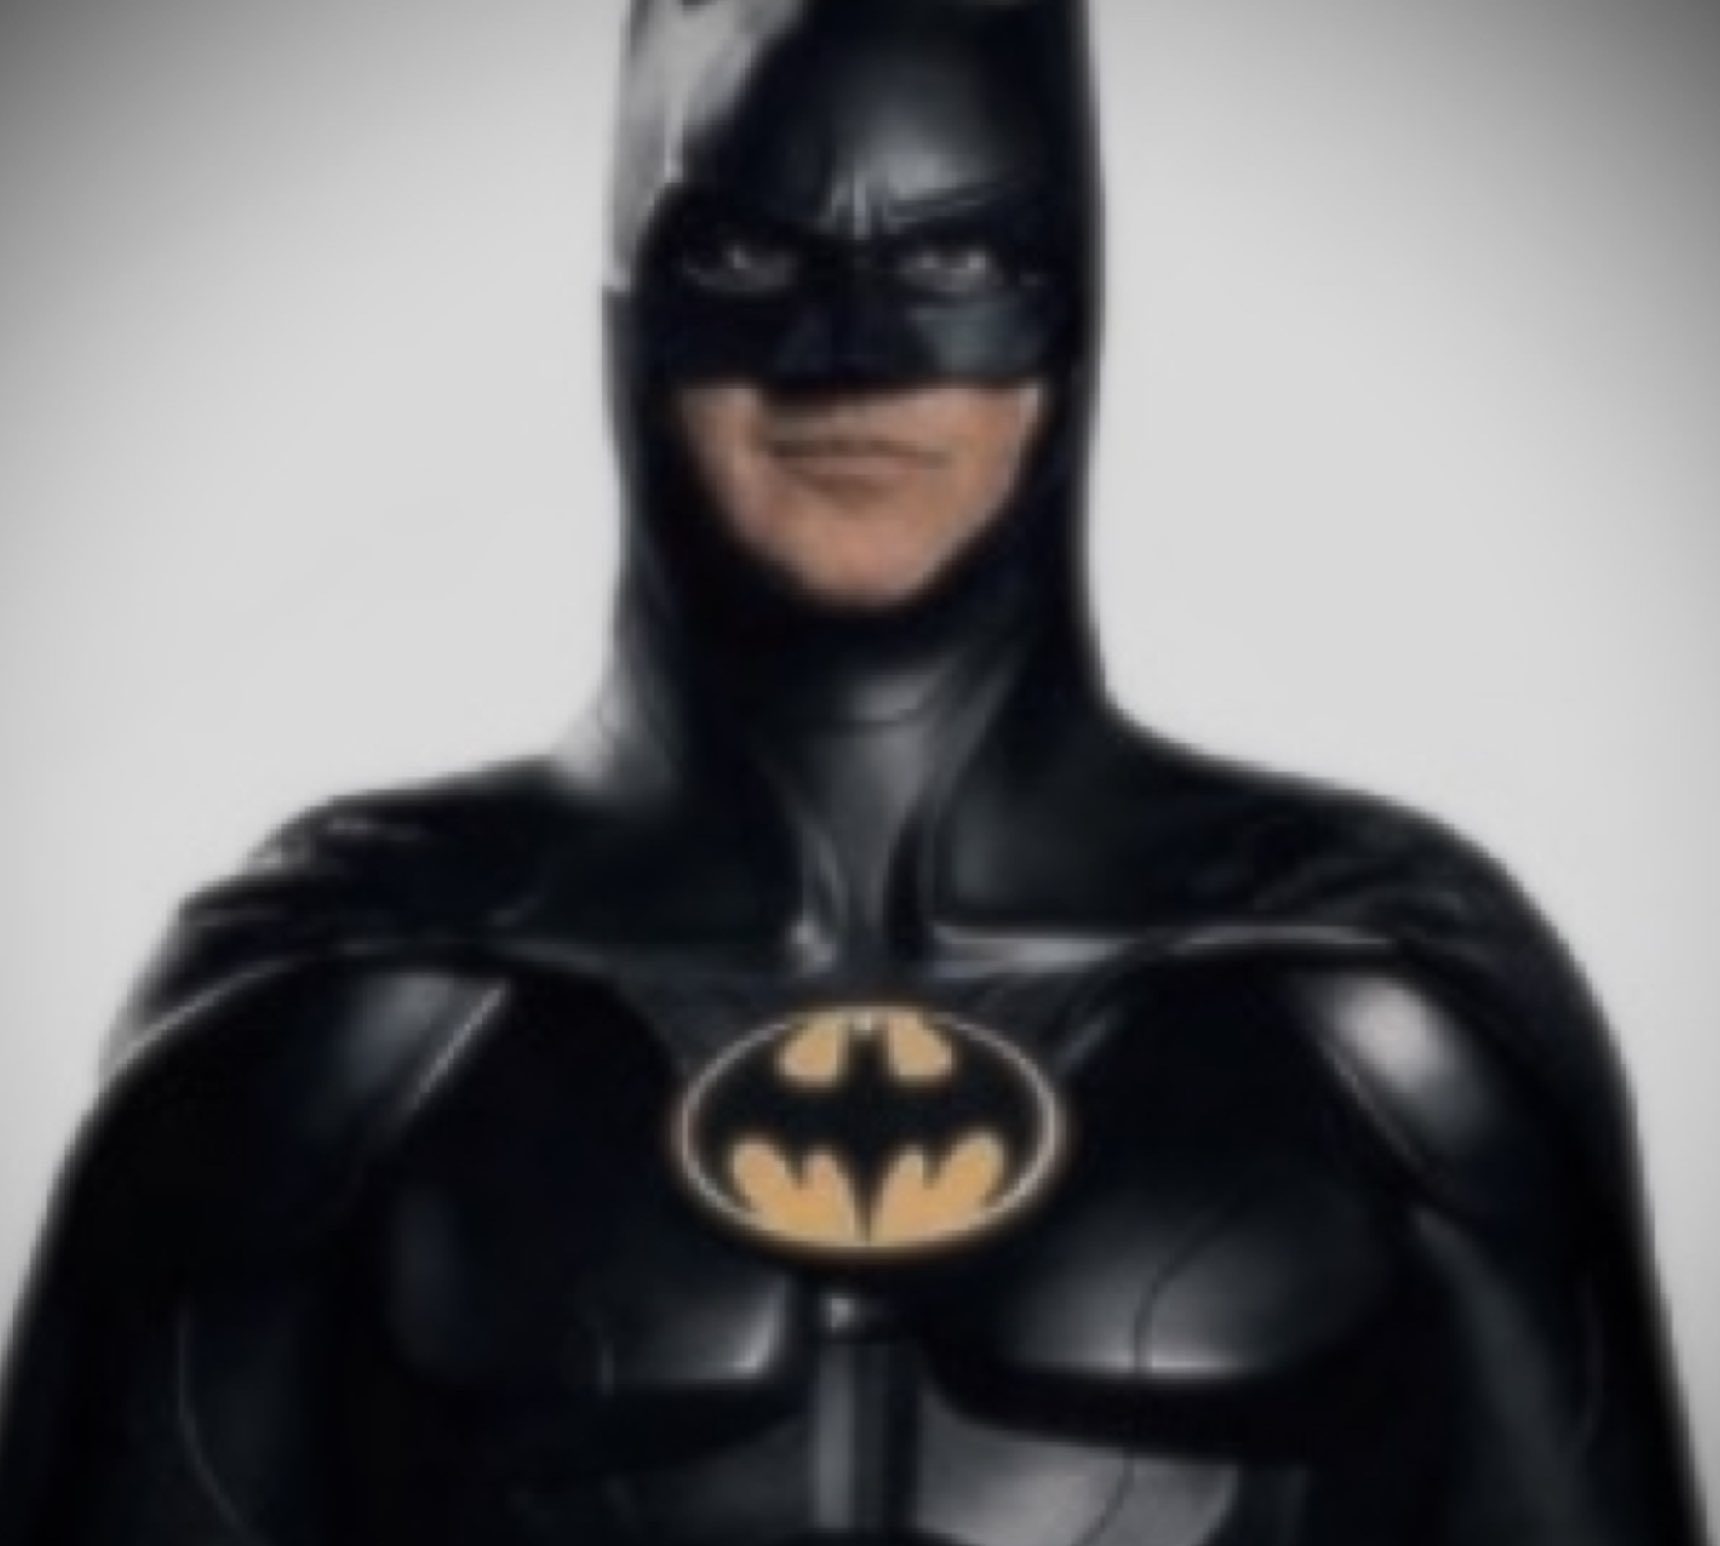 Batman, Batgirl, Michael Keaton